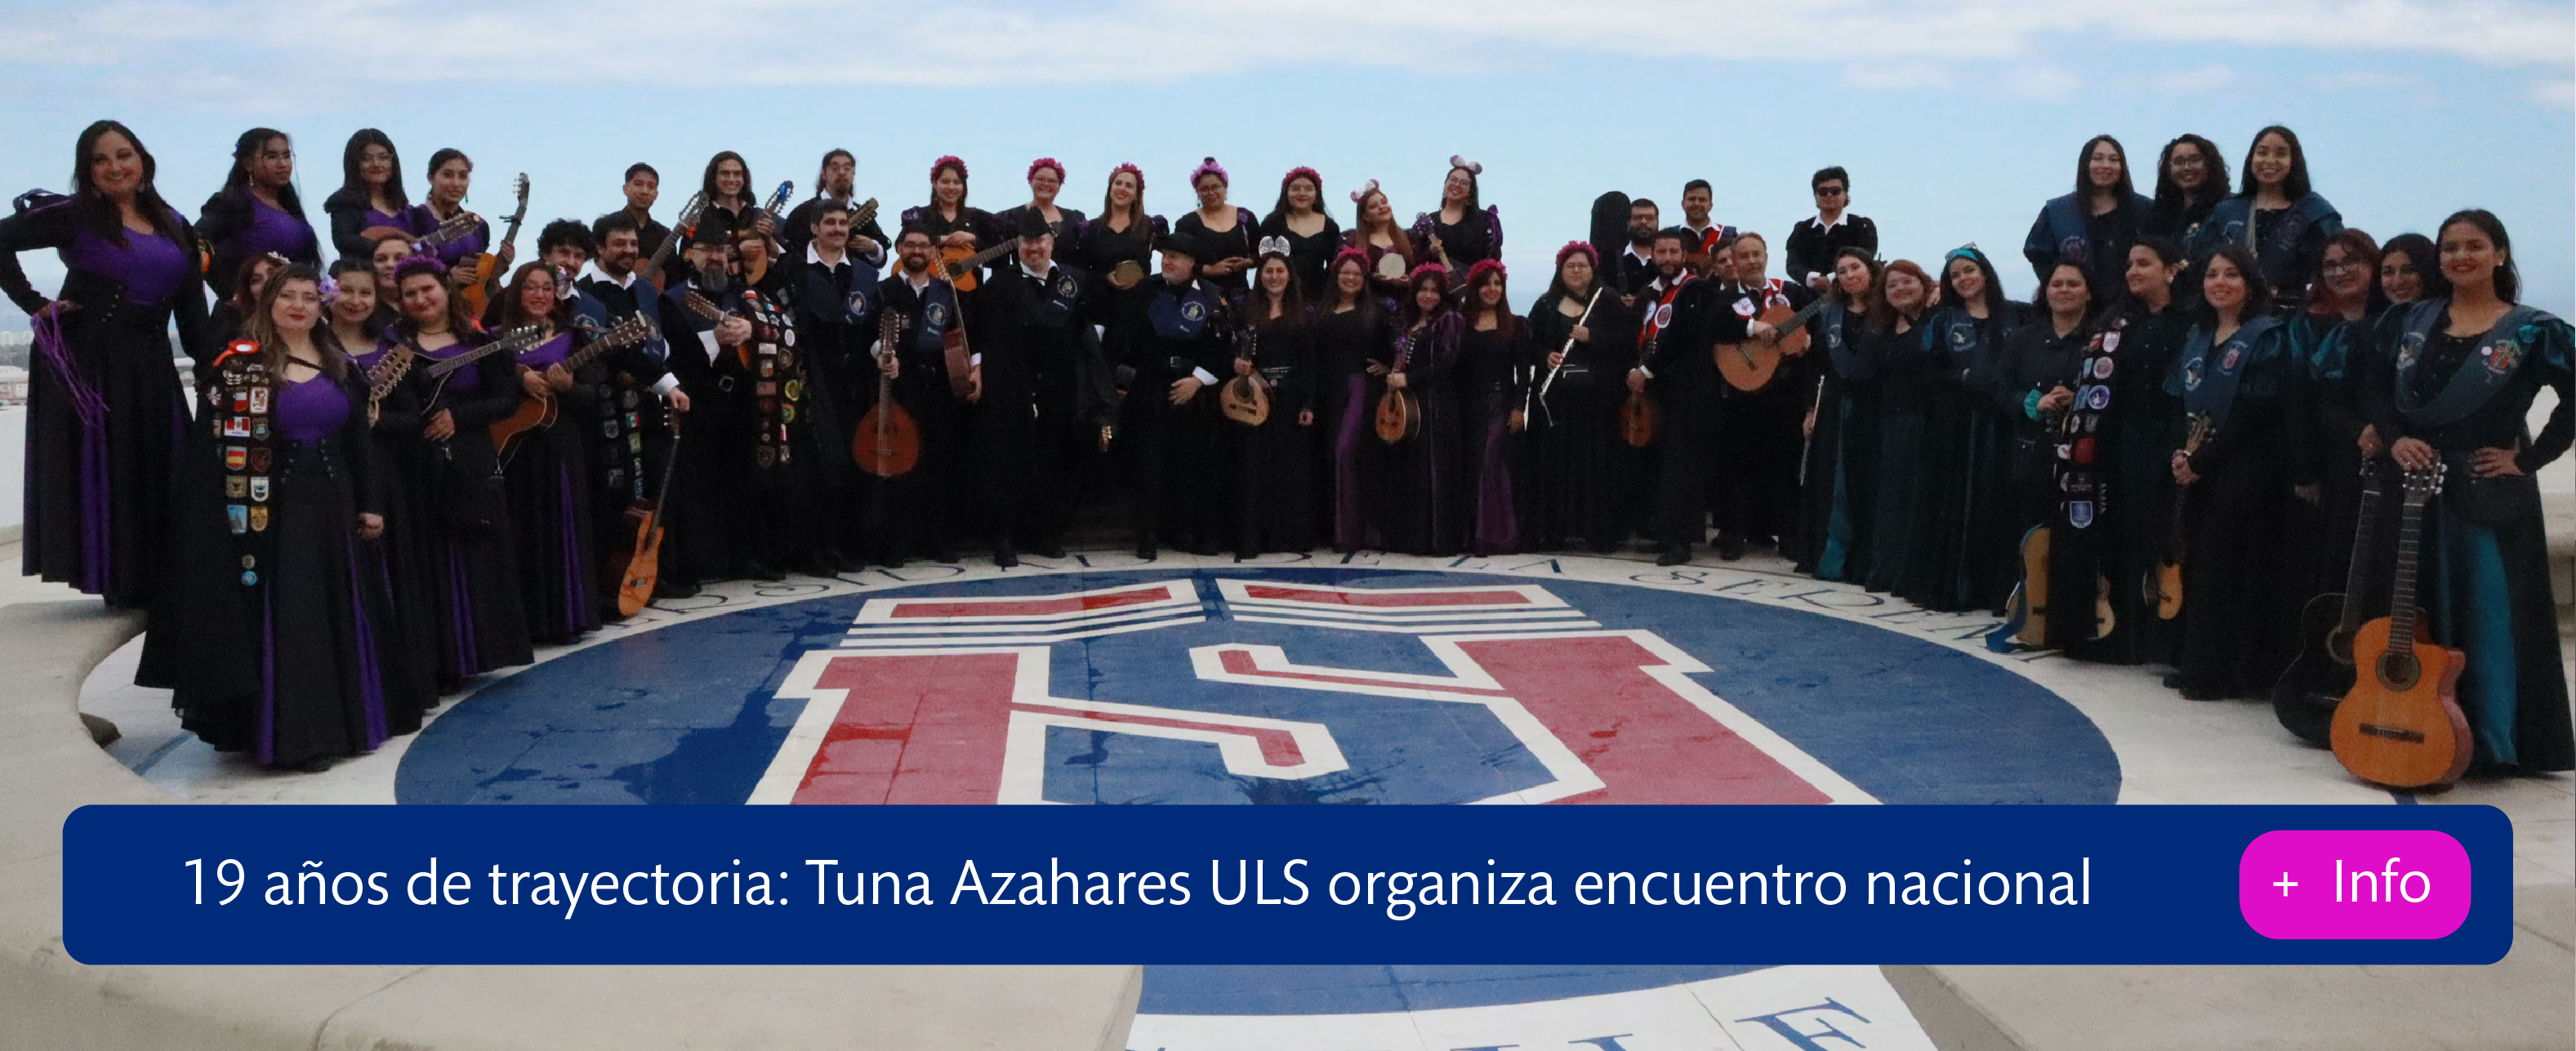 19 años de trayectoria: Tuna Azahares ULS organiza encuentro nacional